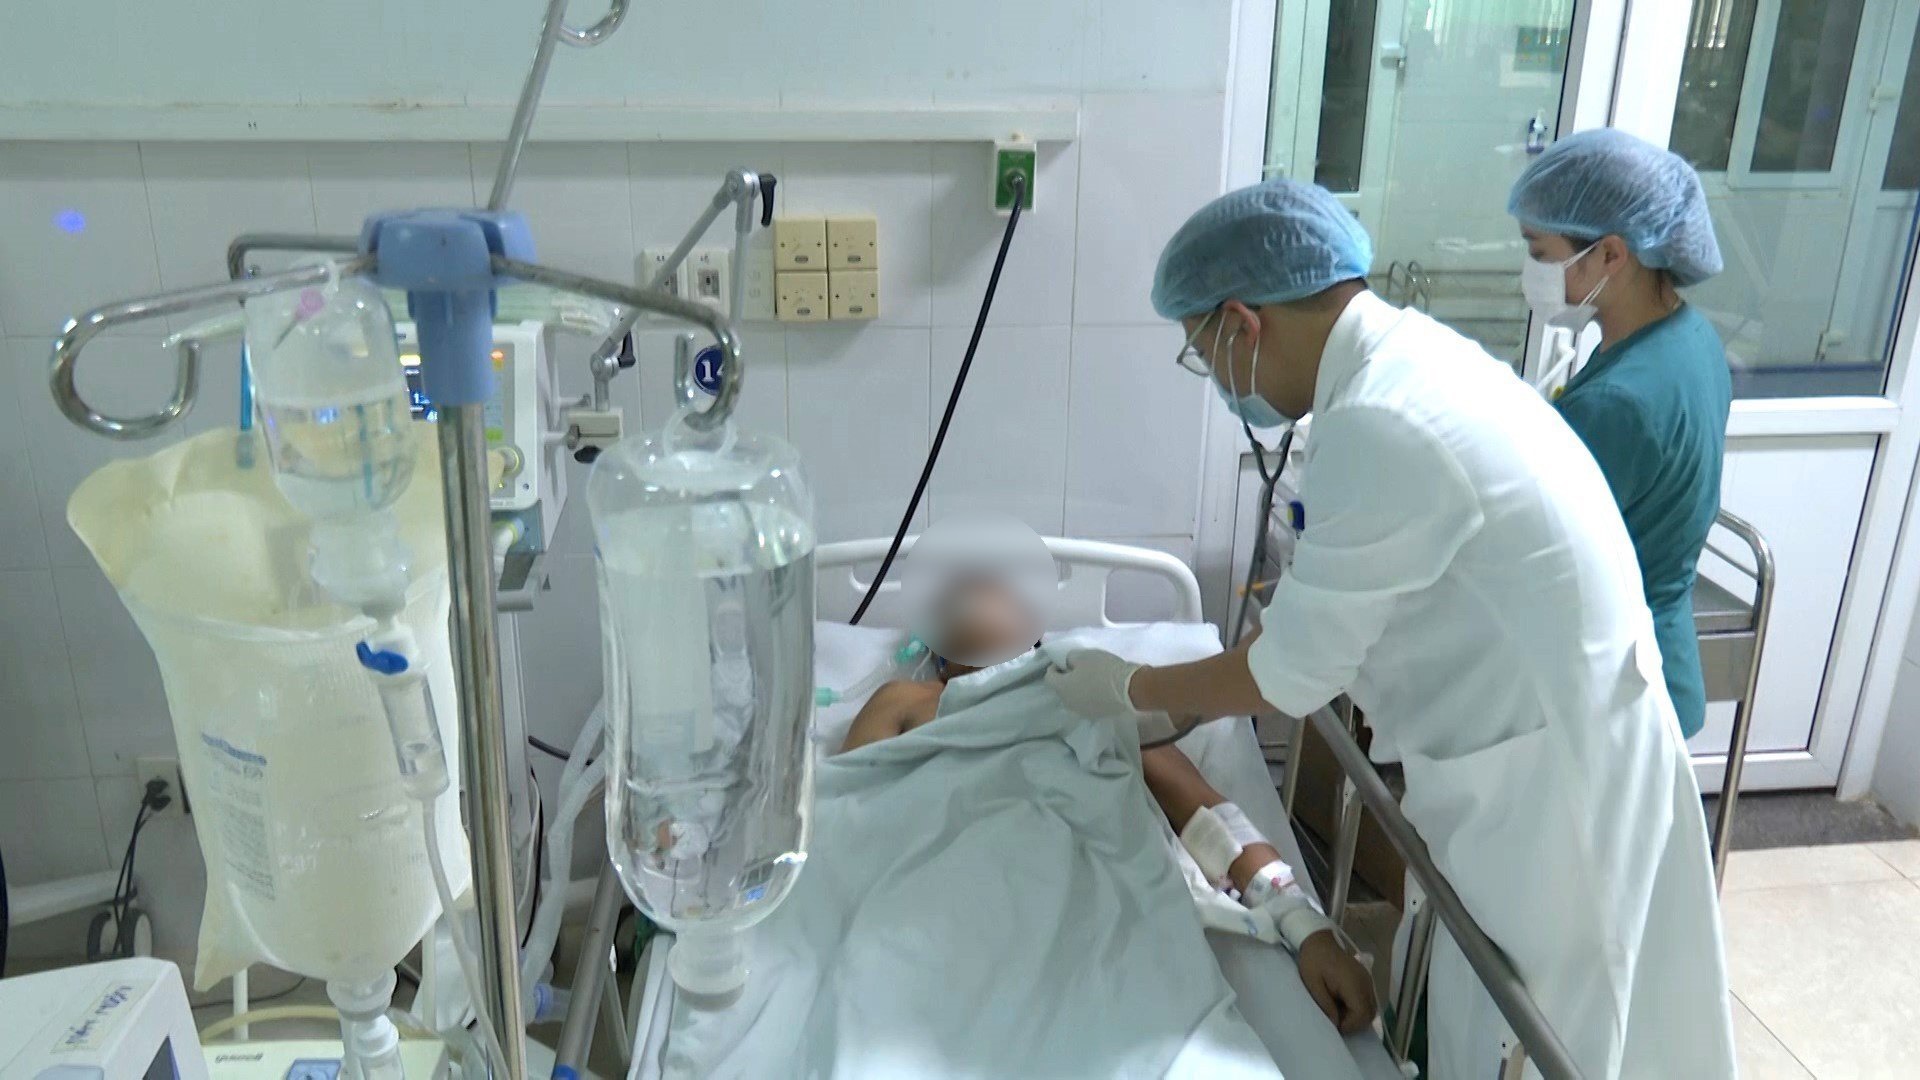 Đoàn chuyên gia chống độc bệnh viện Chợ Rẫy đã để lại Quảng Nam 2 liều thuốc giải độc Botulinum để đề phòng sự cố. Ảnh Hoàng Bin